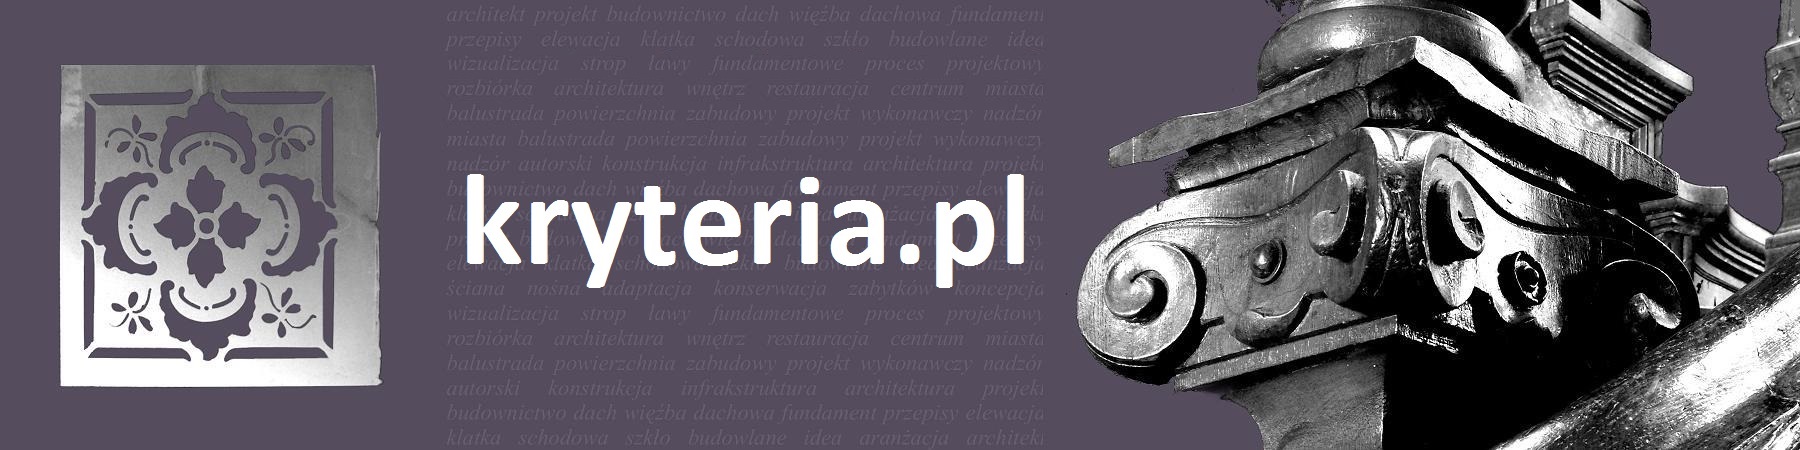  Strona główna portalu kryteria.pl